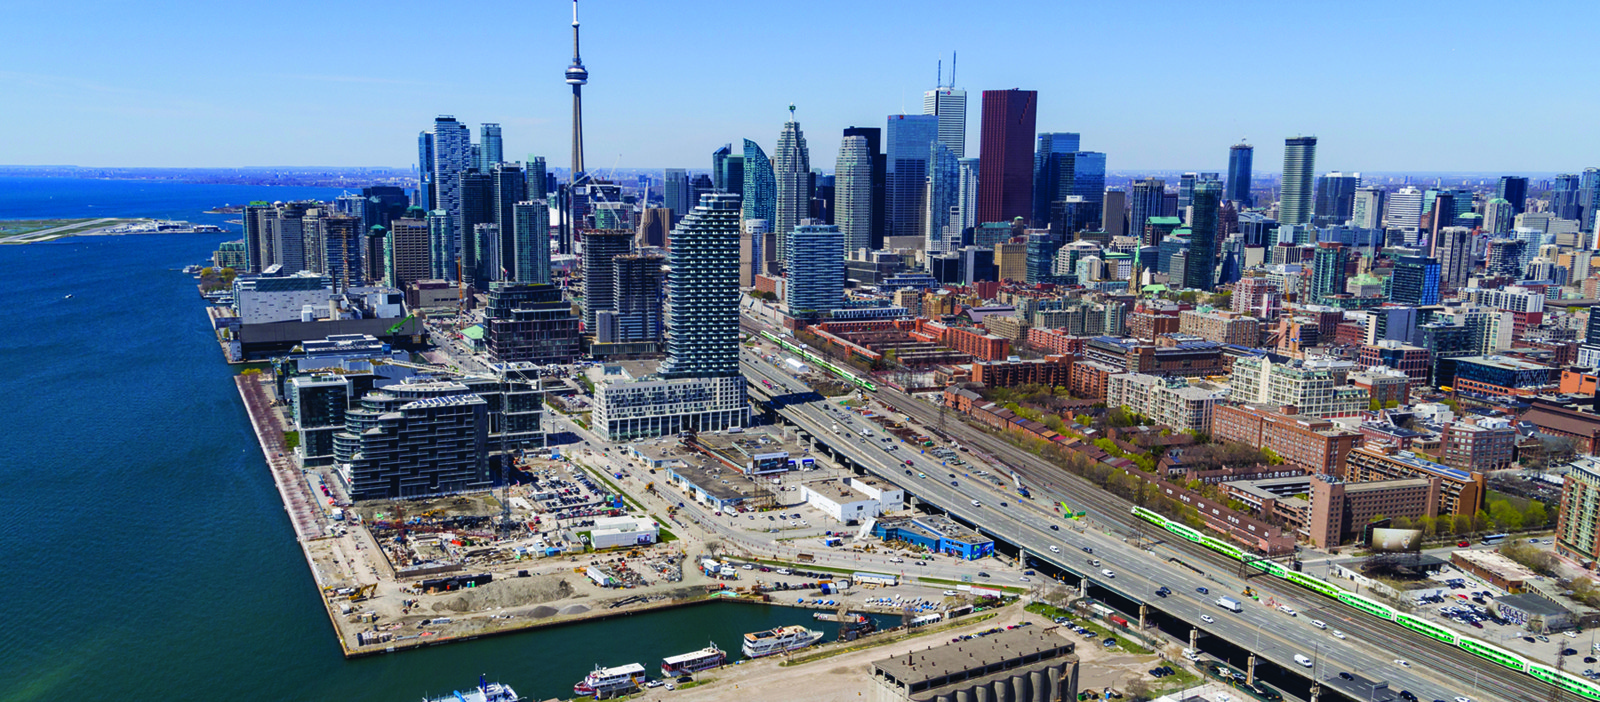 Google construye la ciudad del futuro en Toronto